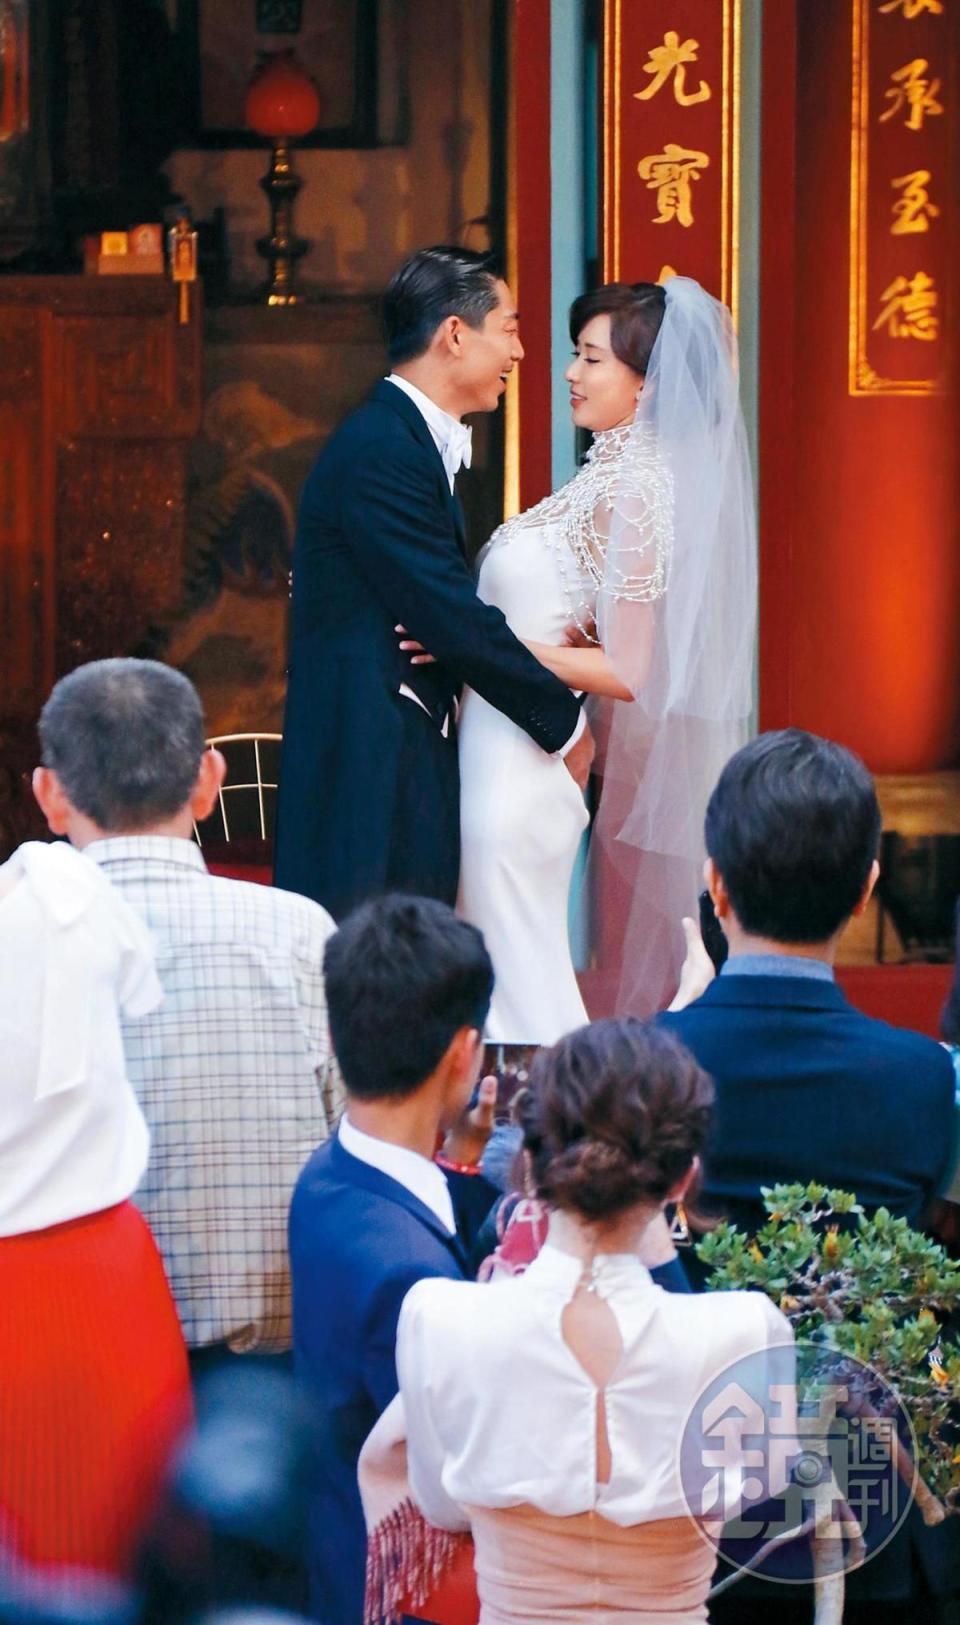 林志玲和Akira的婚禮話題至今仍在延燒。